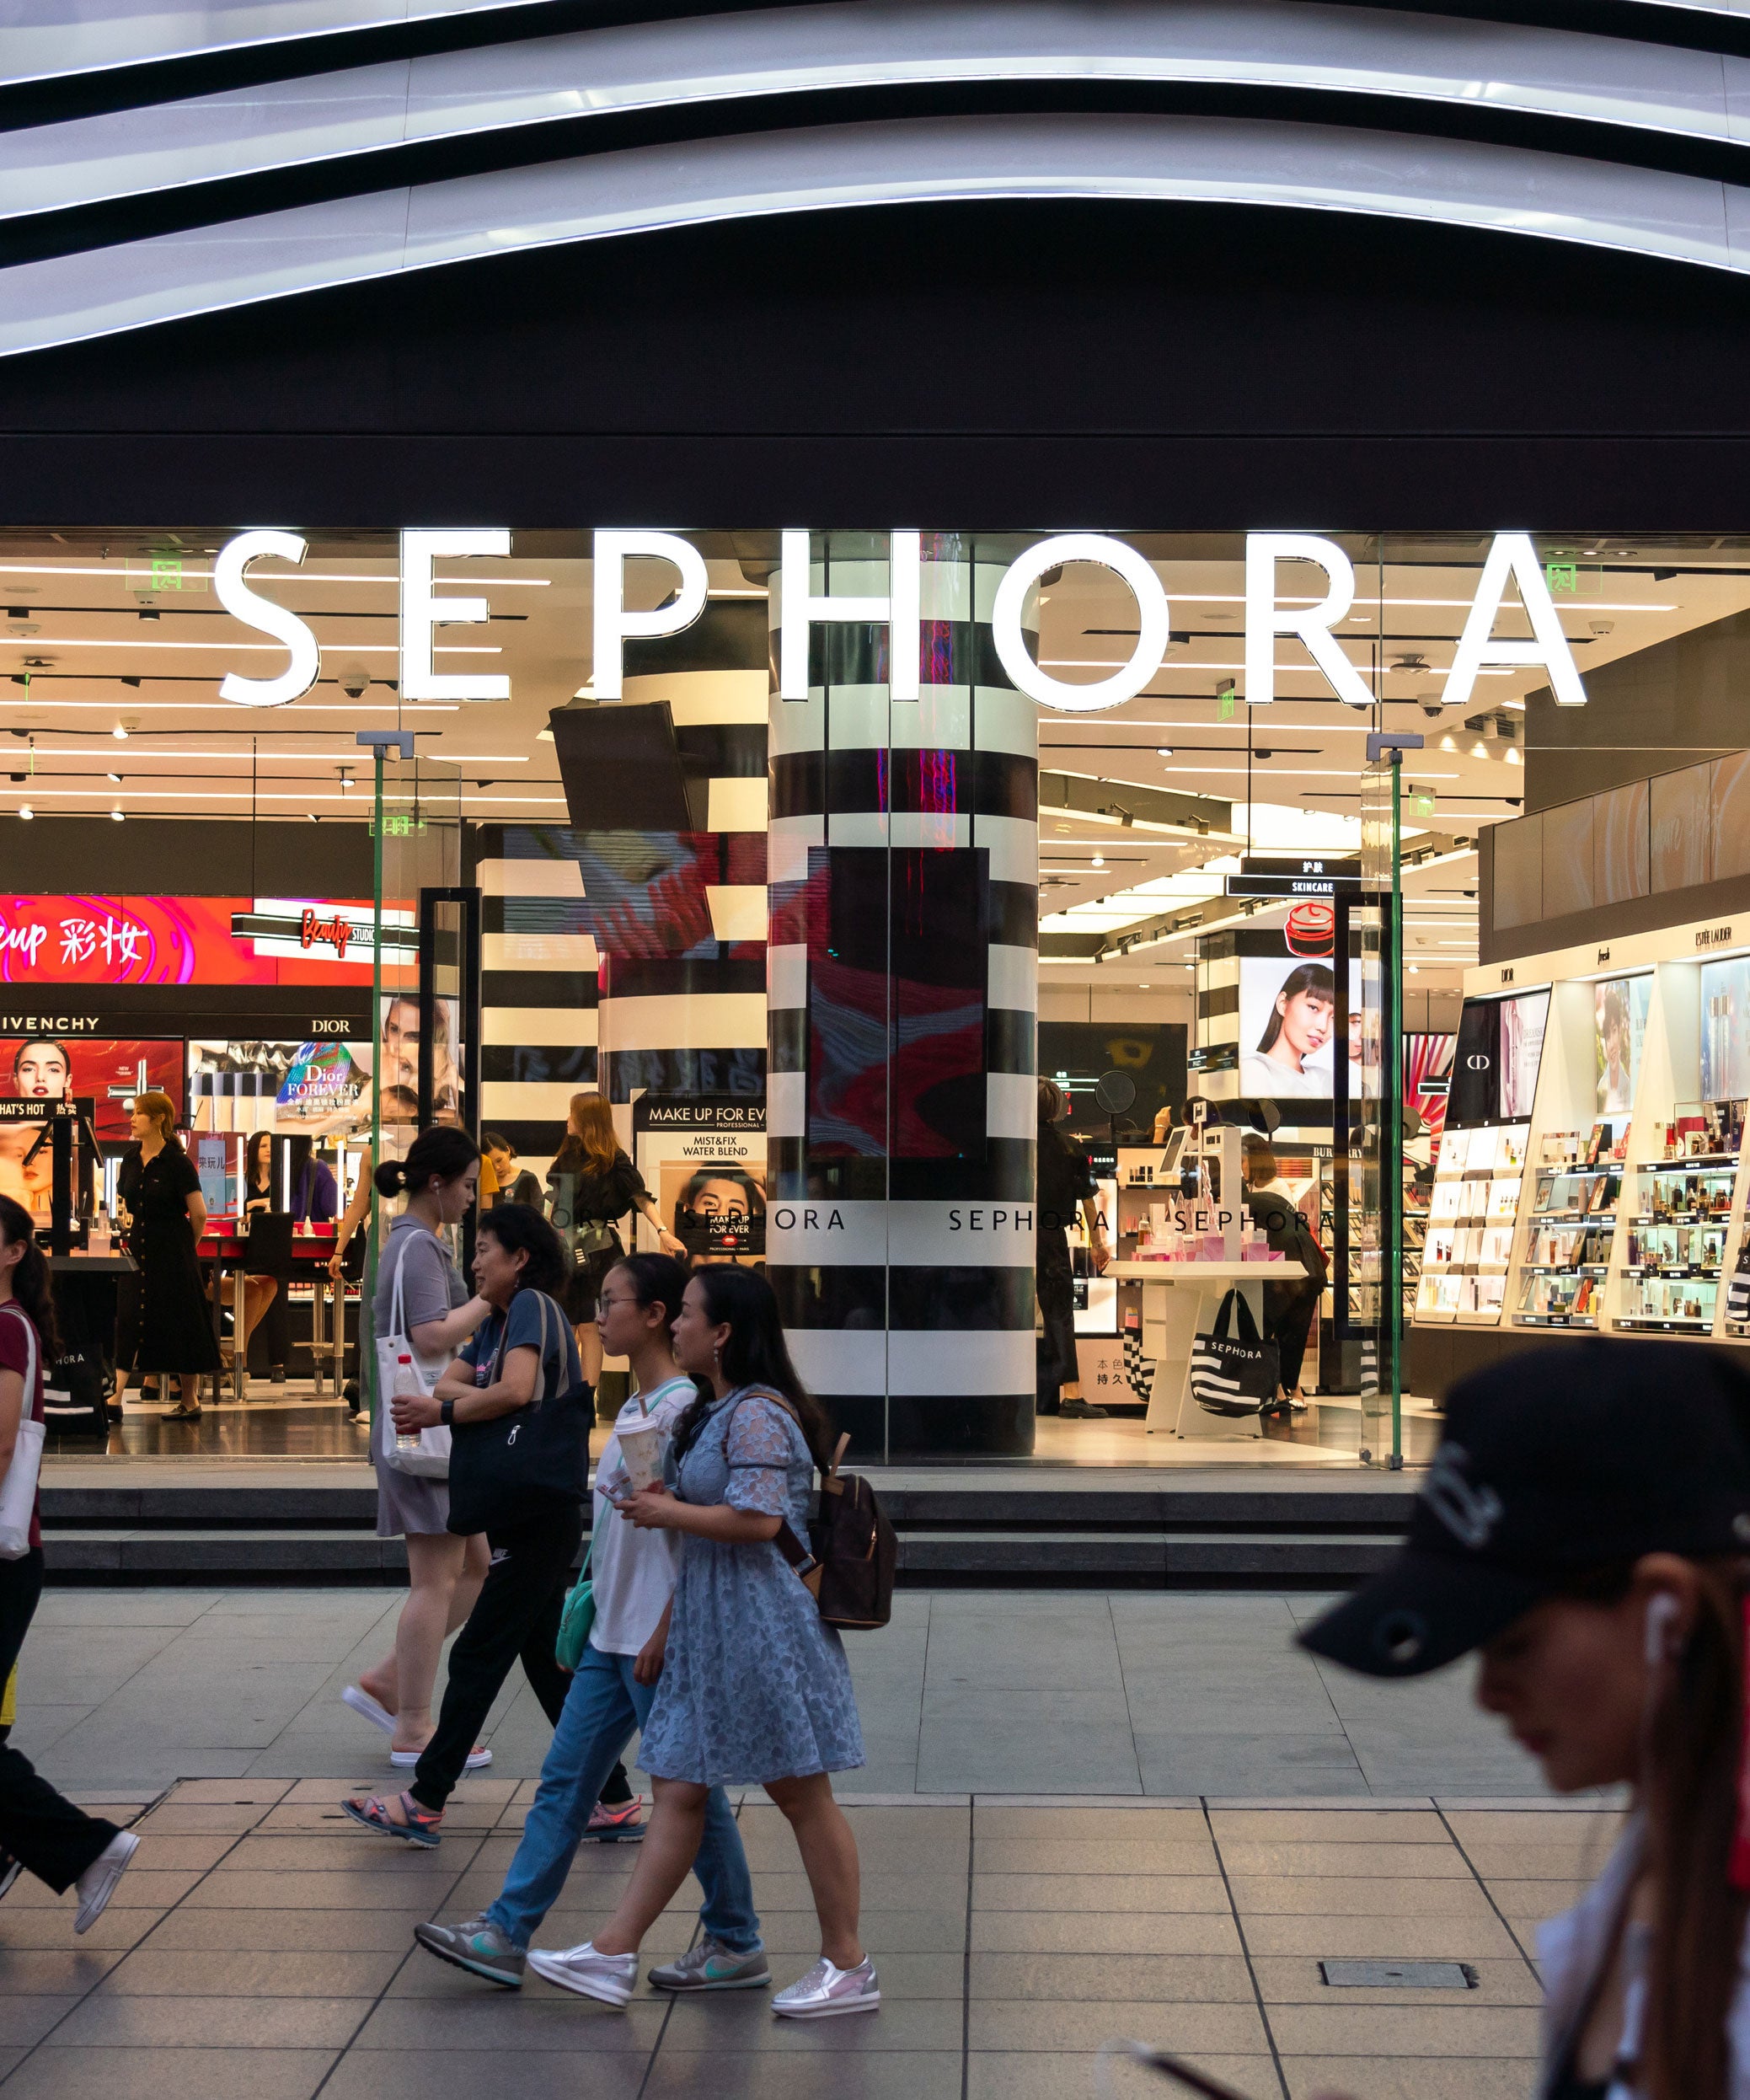 Who owns Sephora?